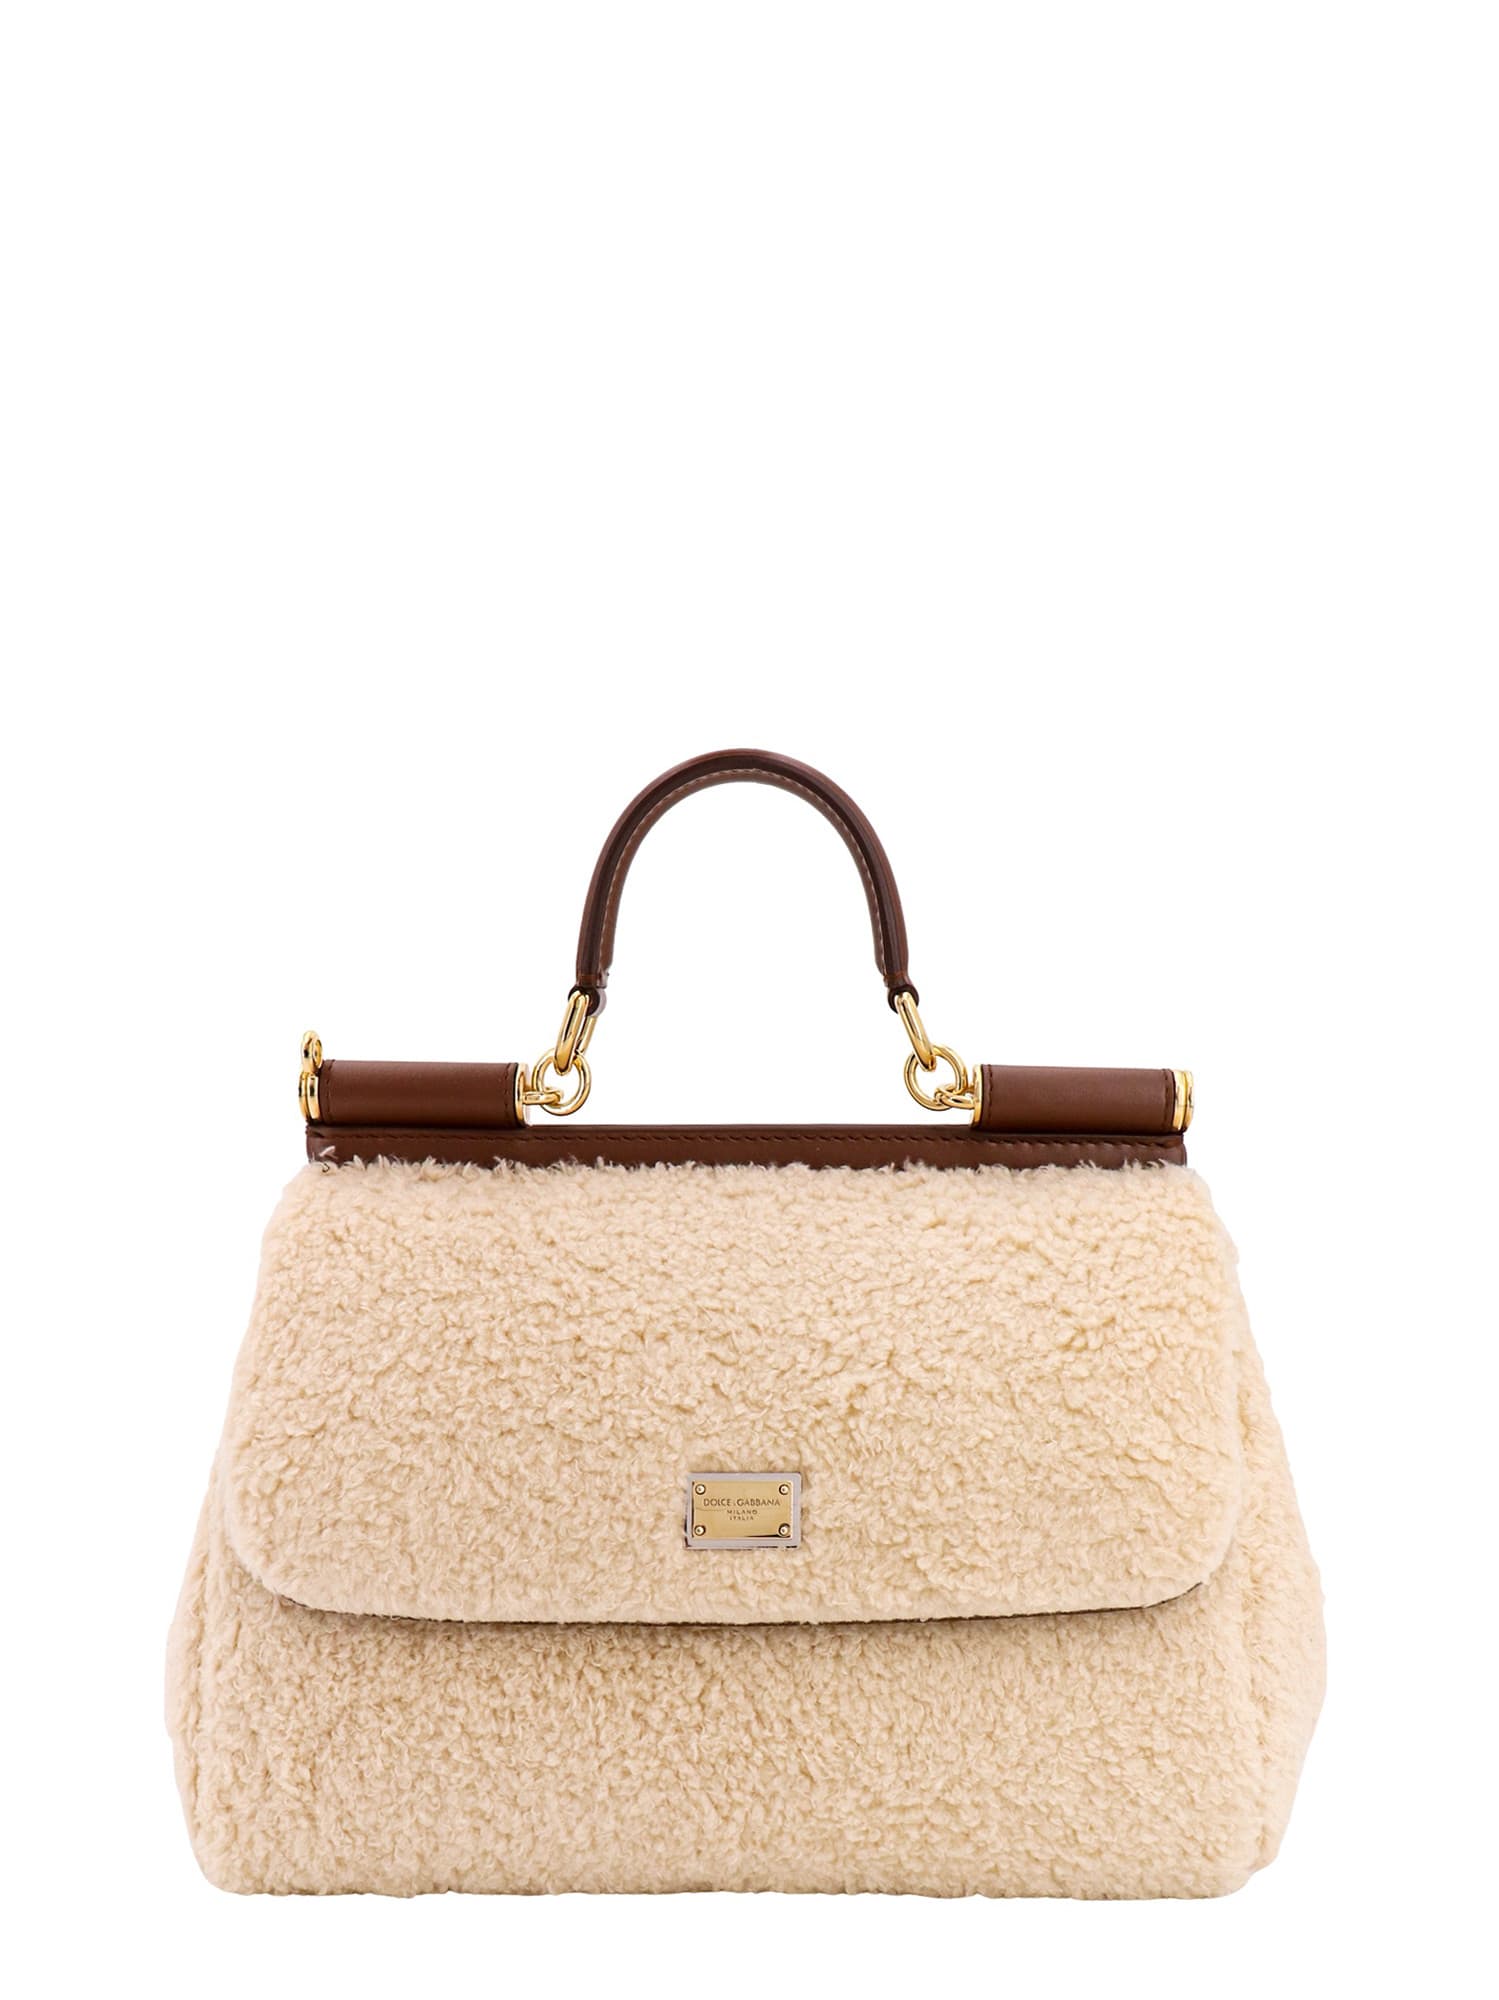 Dolce & Gabbana Sicily Shoulder Bag - Neutrals